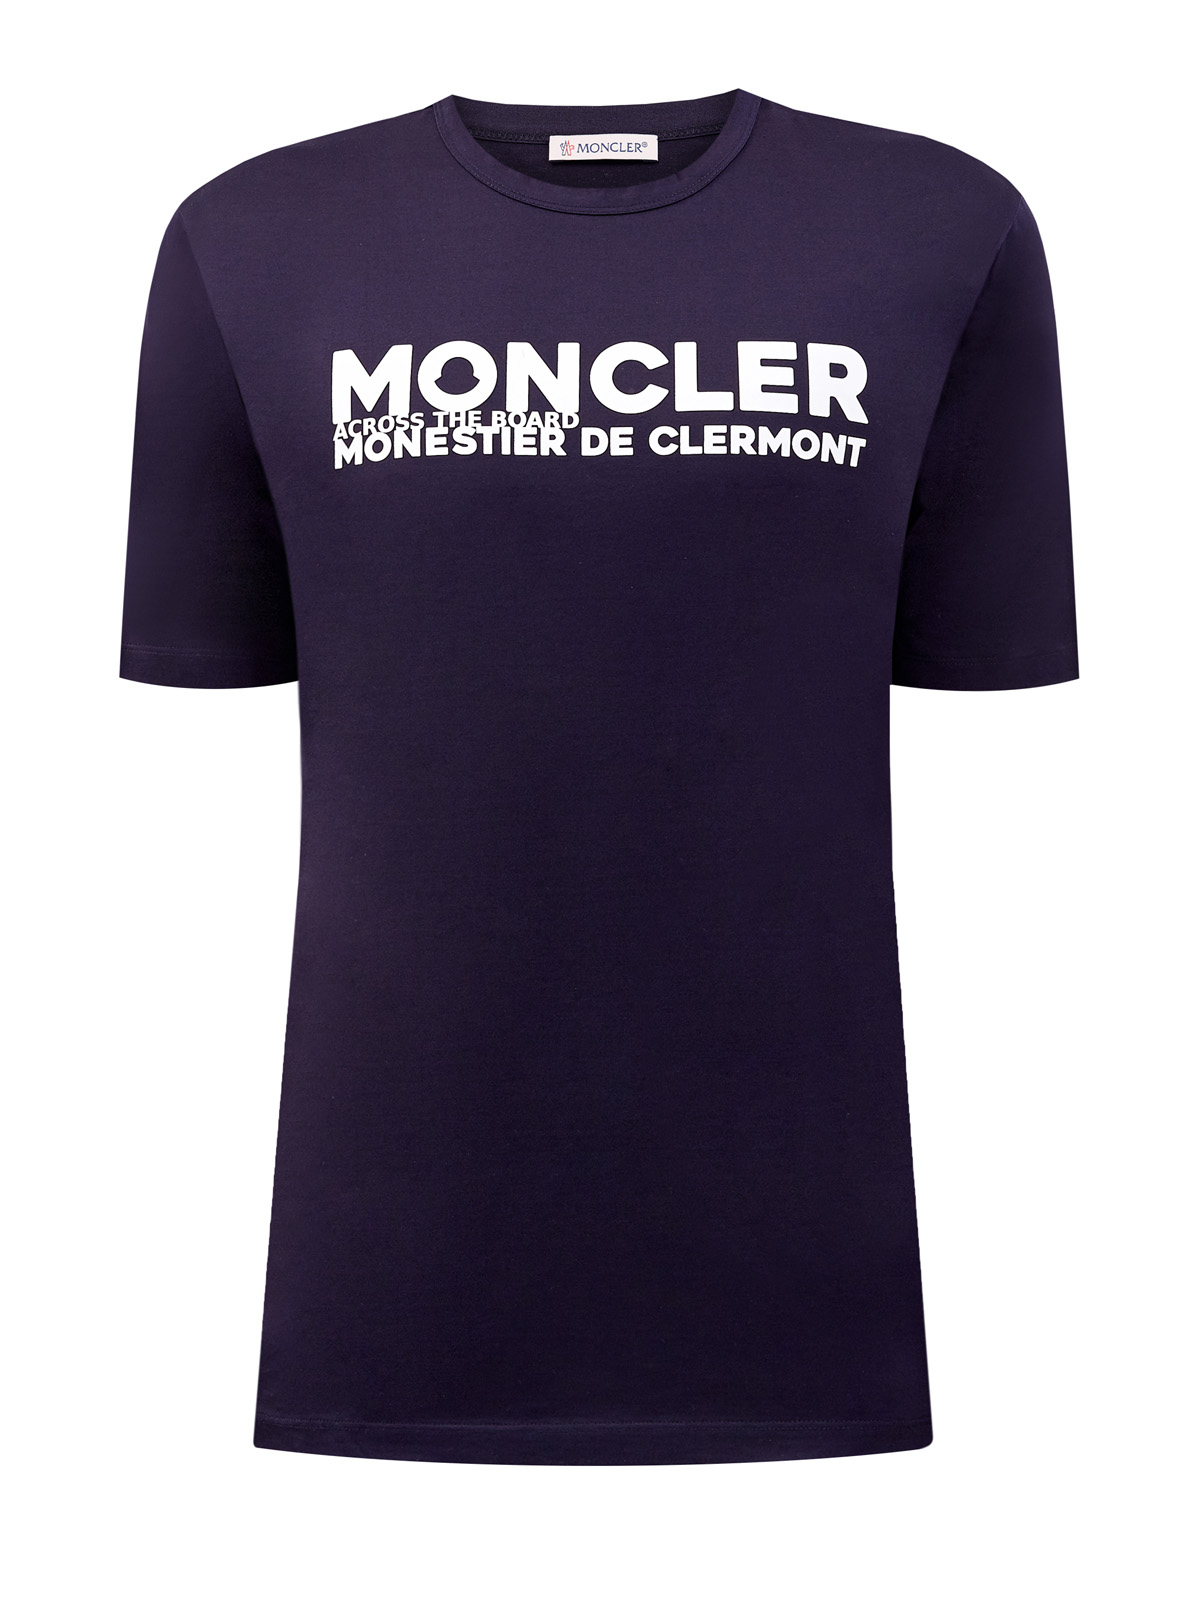 Хлопковая футболка с объемной аппликацией-леттерингом MONCLER, цвет синий, размер M;L;XL;3XL - фото 1